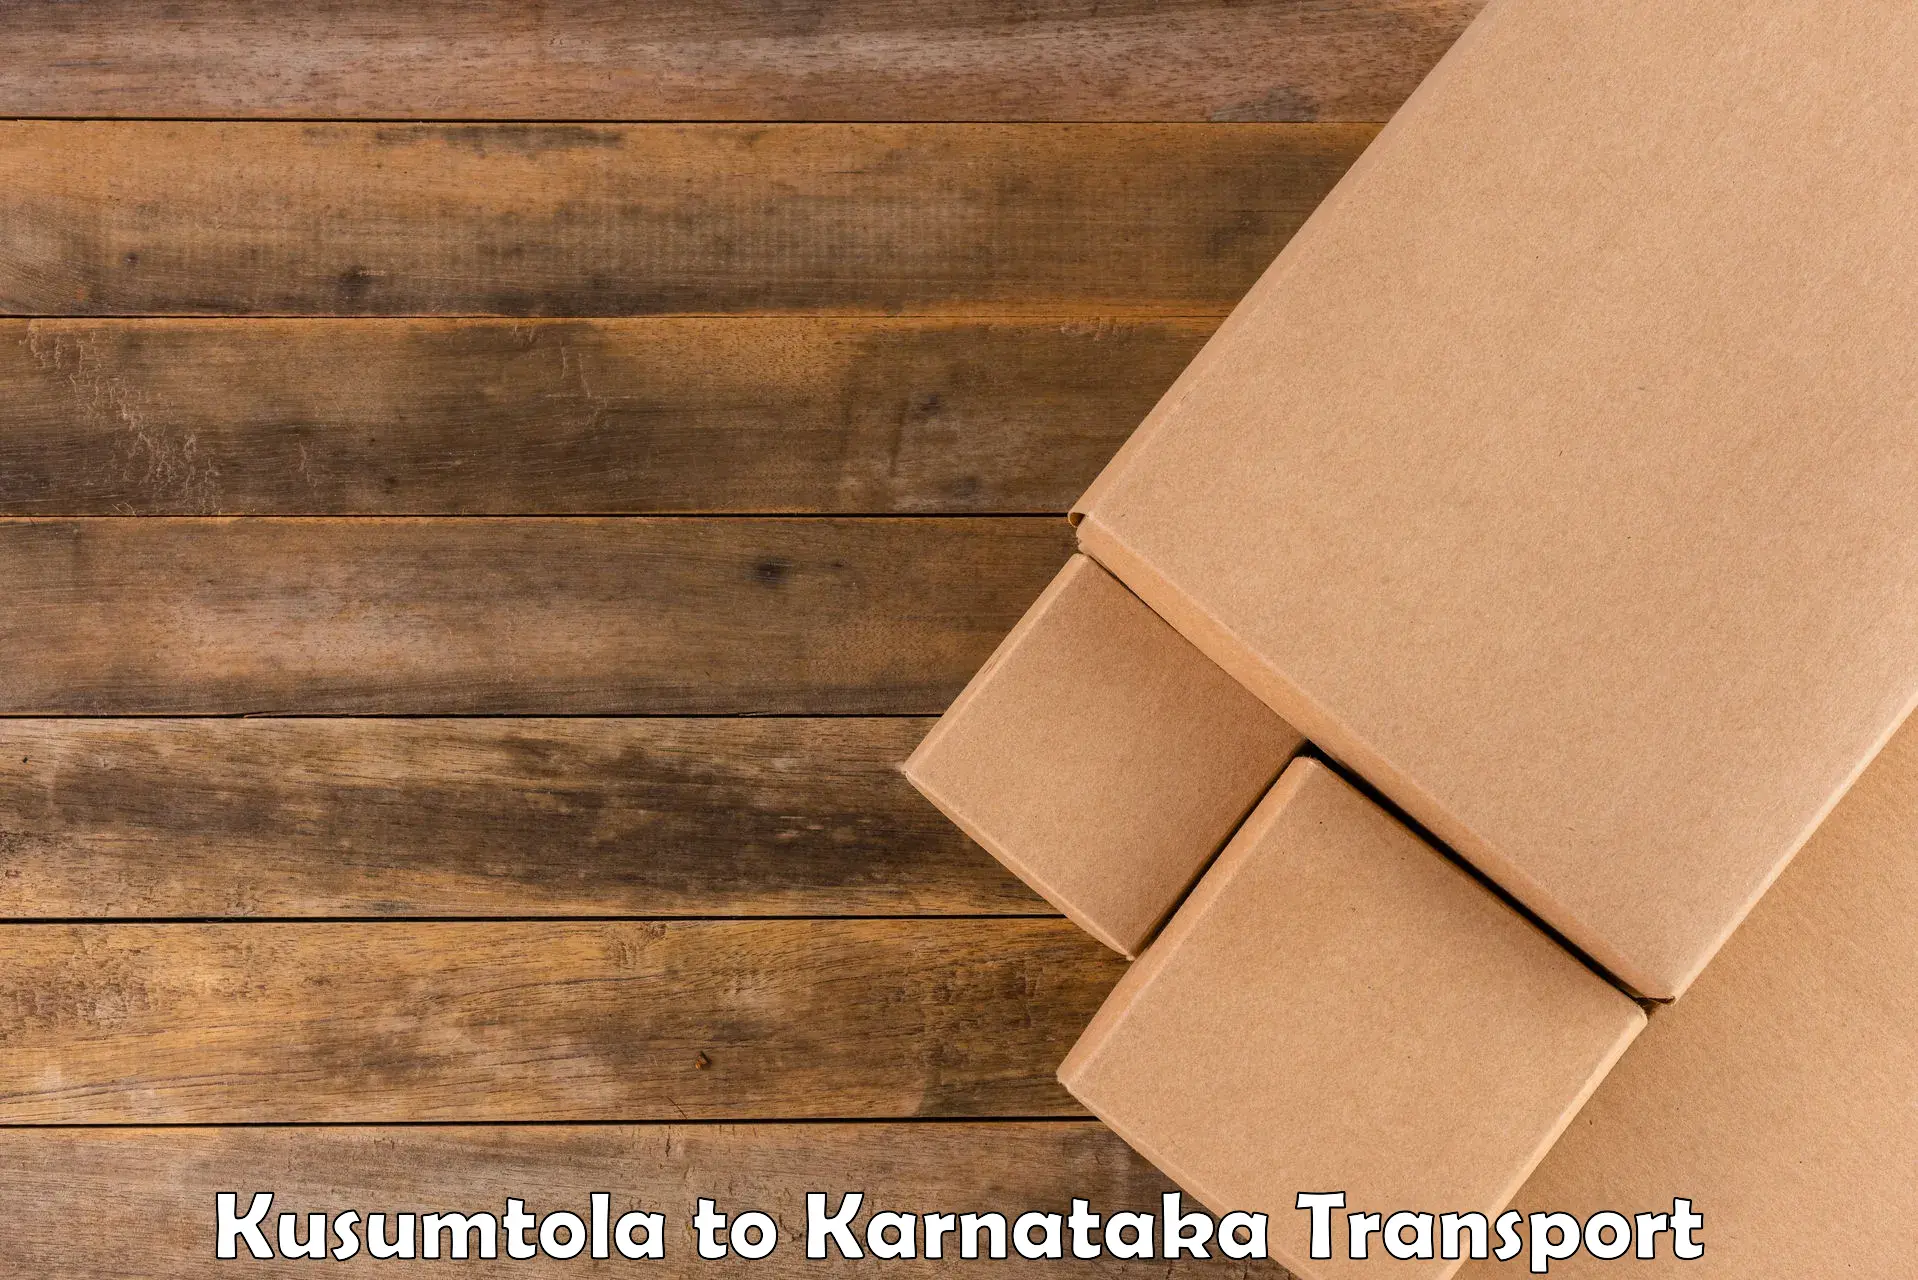 Commercial transport service Kusumtola to Sindhanur